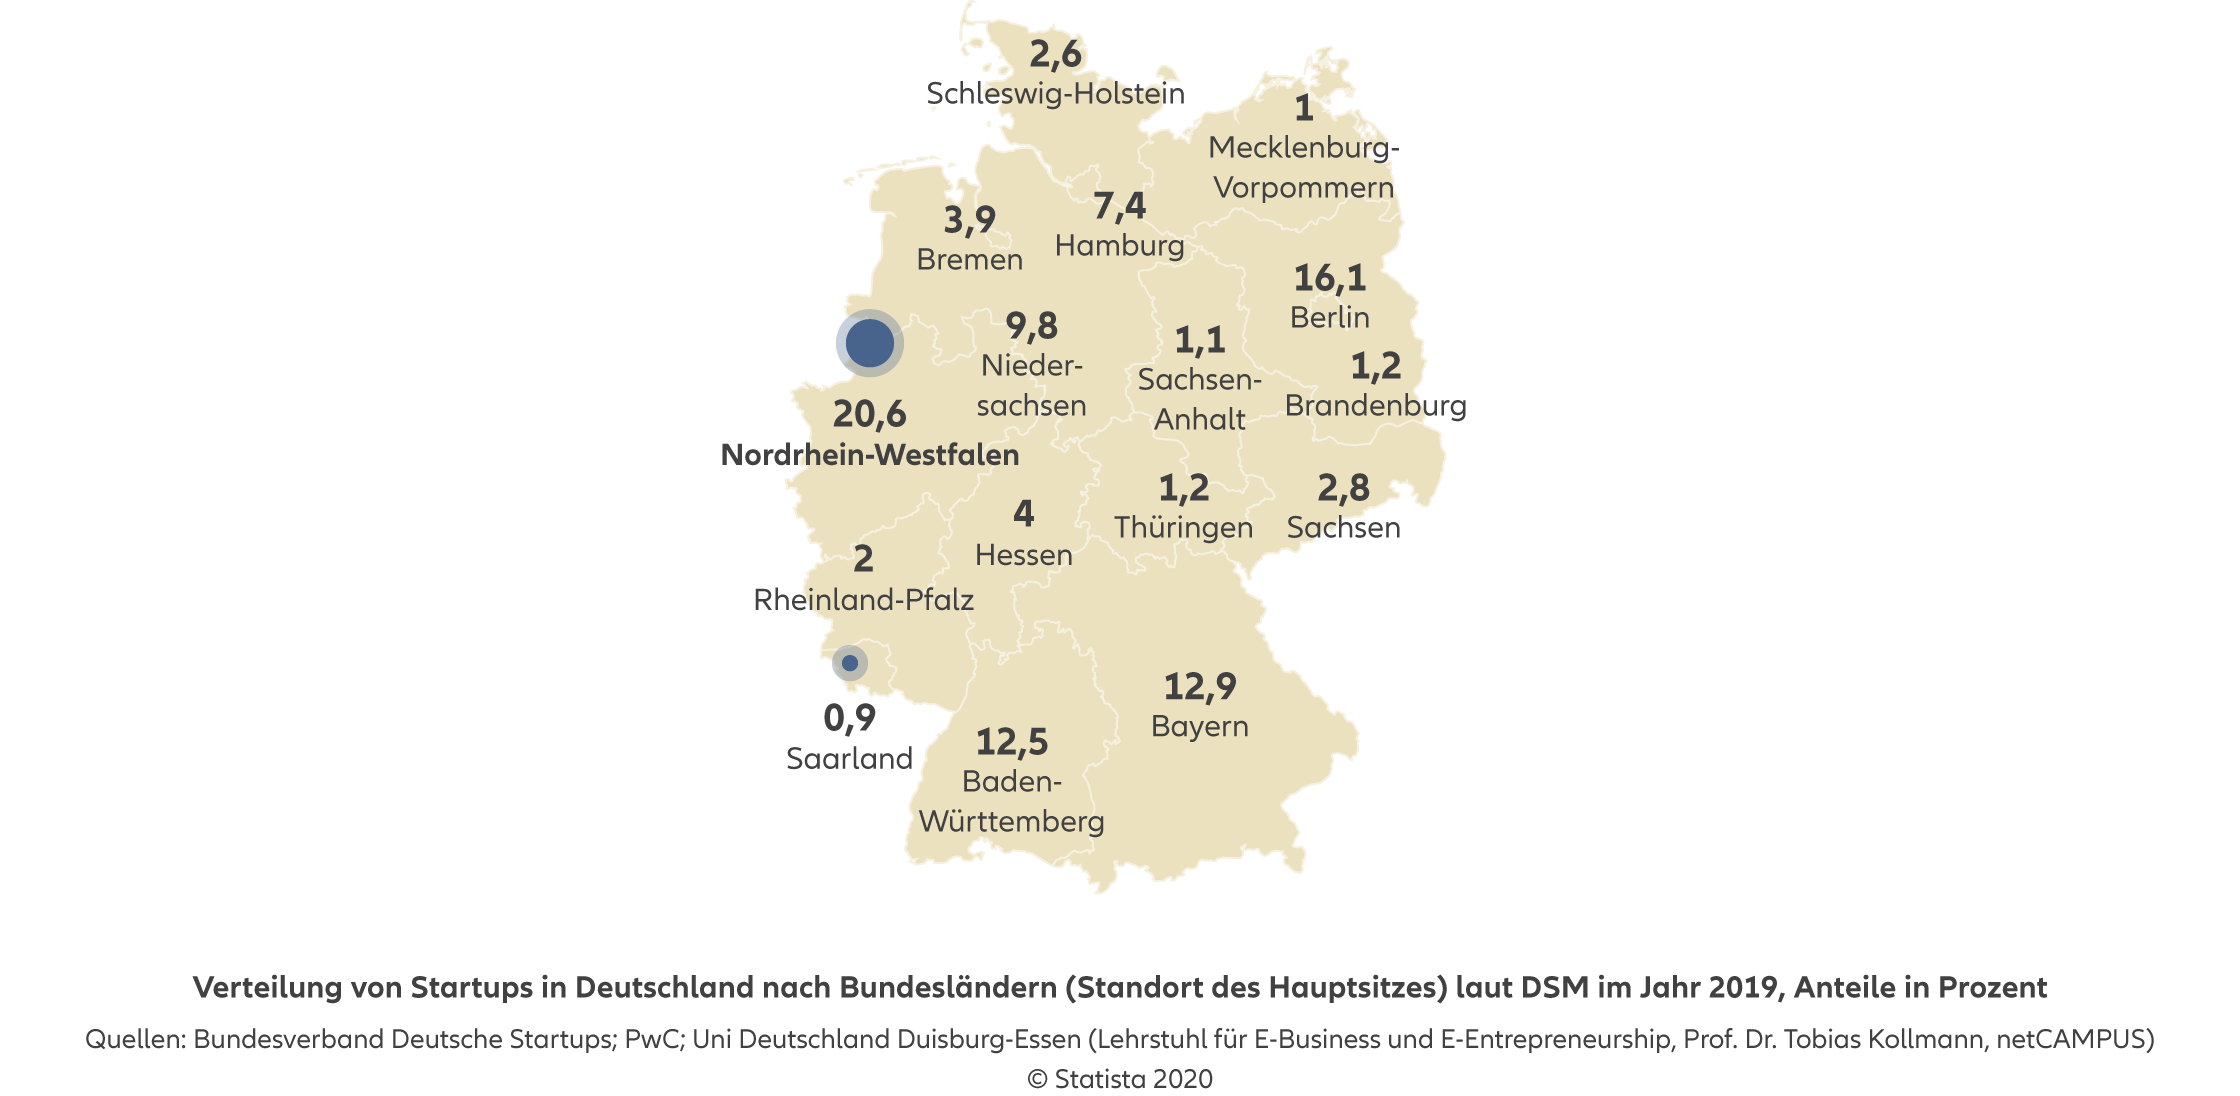 Agentursuche Risikolebensversicherung Köln - Infografik: Verteilung von Startups in Deutschland nach Bundesländern (Standort des Hauptsitzes) laut DSM im Jahr 2019